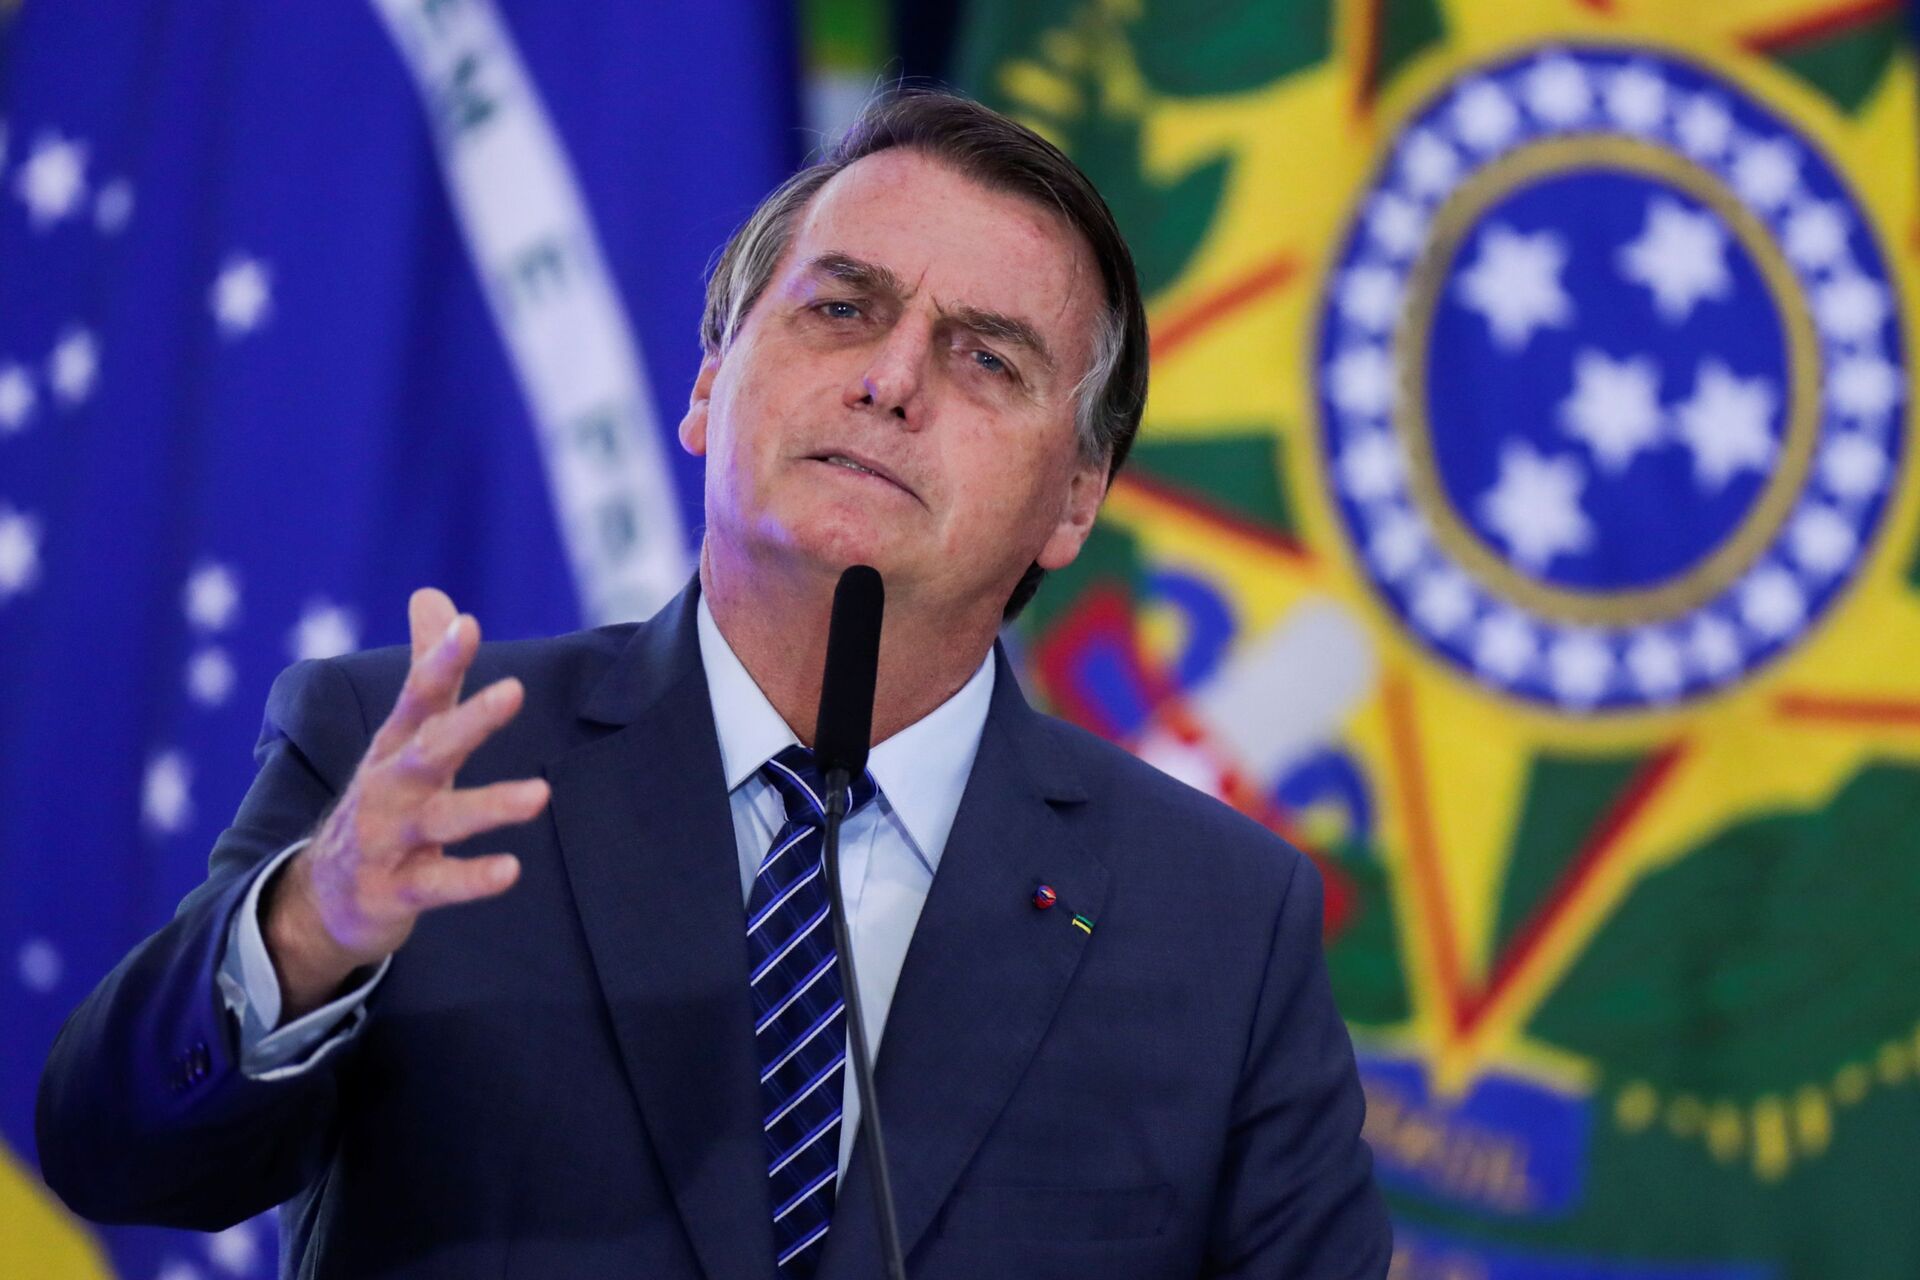 'Ele quer ter total autonomia', diz analista sobre demora de Bolsonaro para se filiar a partido - Sputnik Brasil, 1920, 01.06.2021